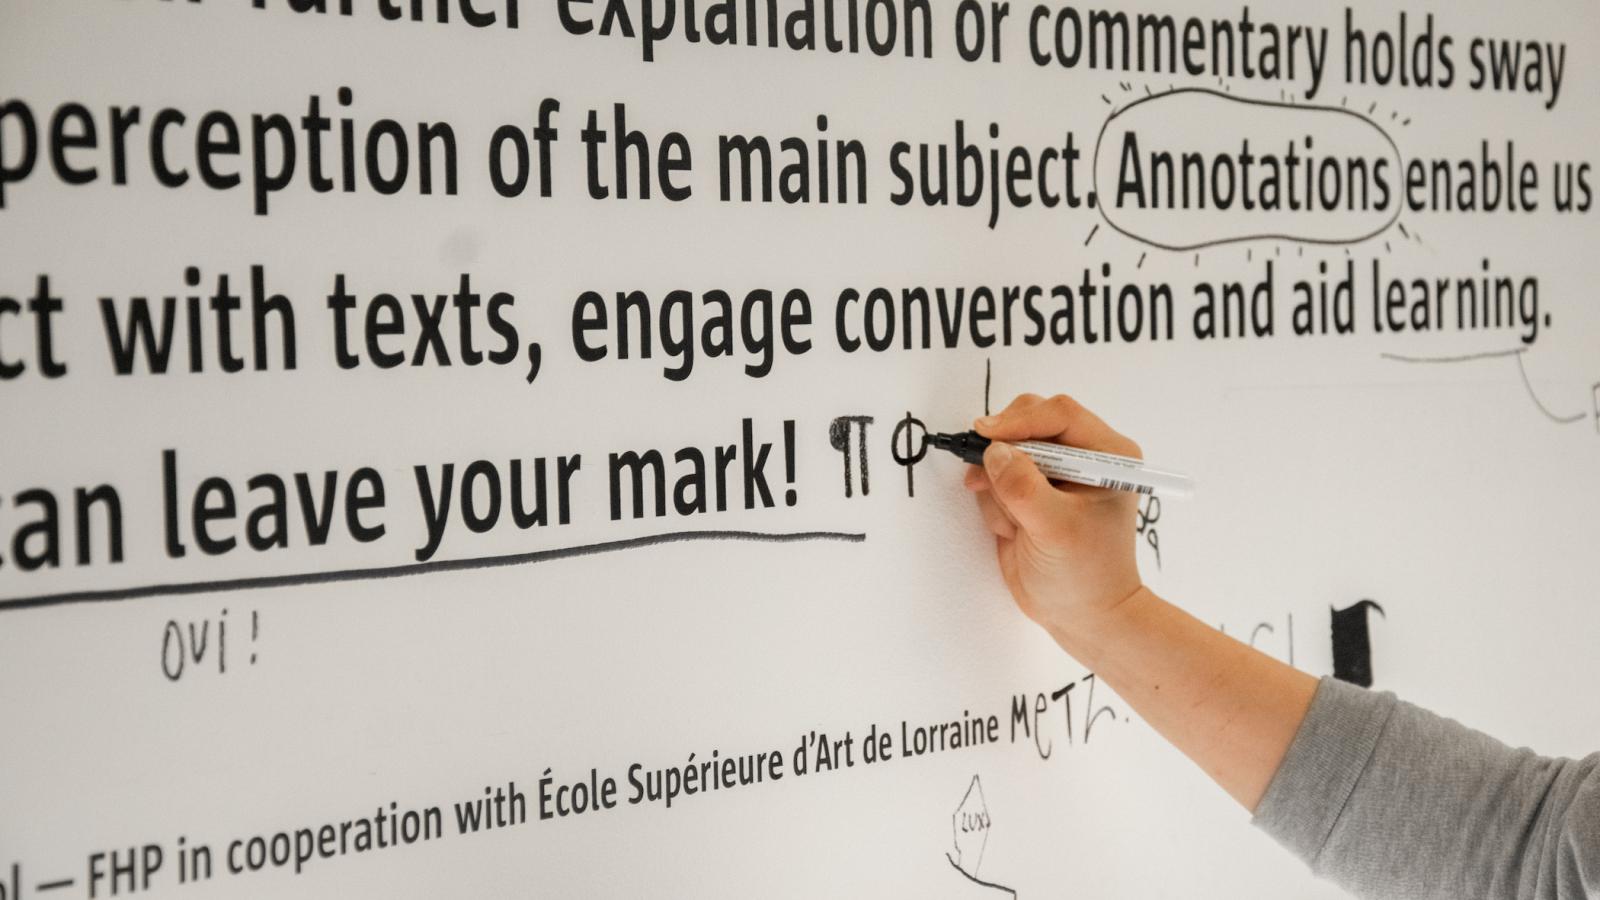 Foto von Hand, die gerade etwas an die Wand schreibt mit einem schwarzen Stift